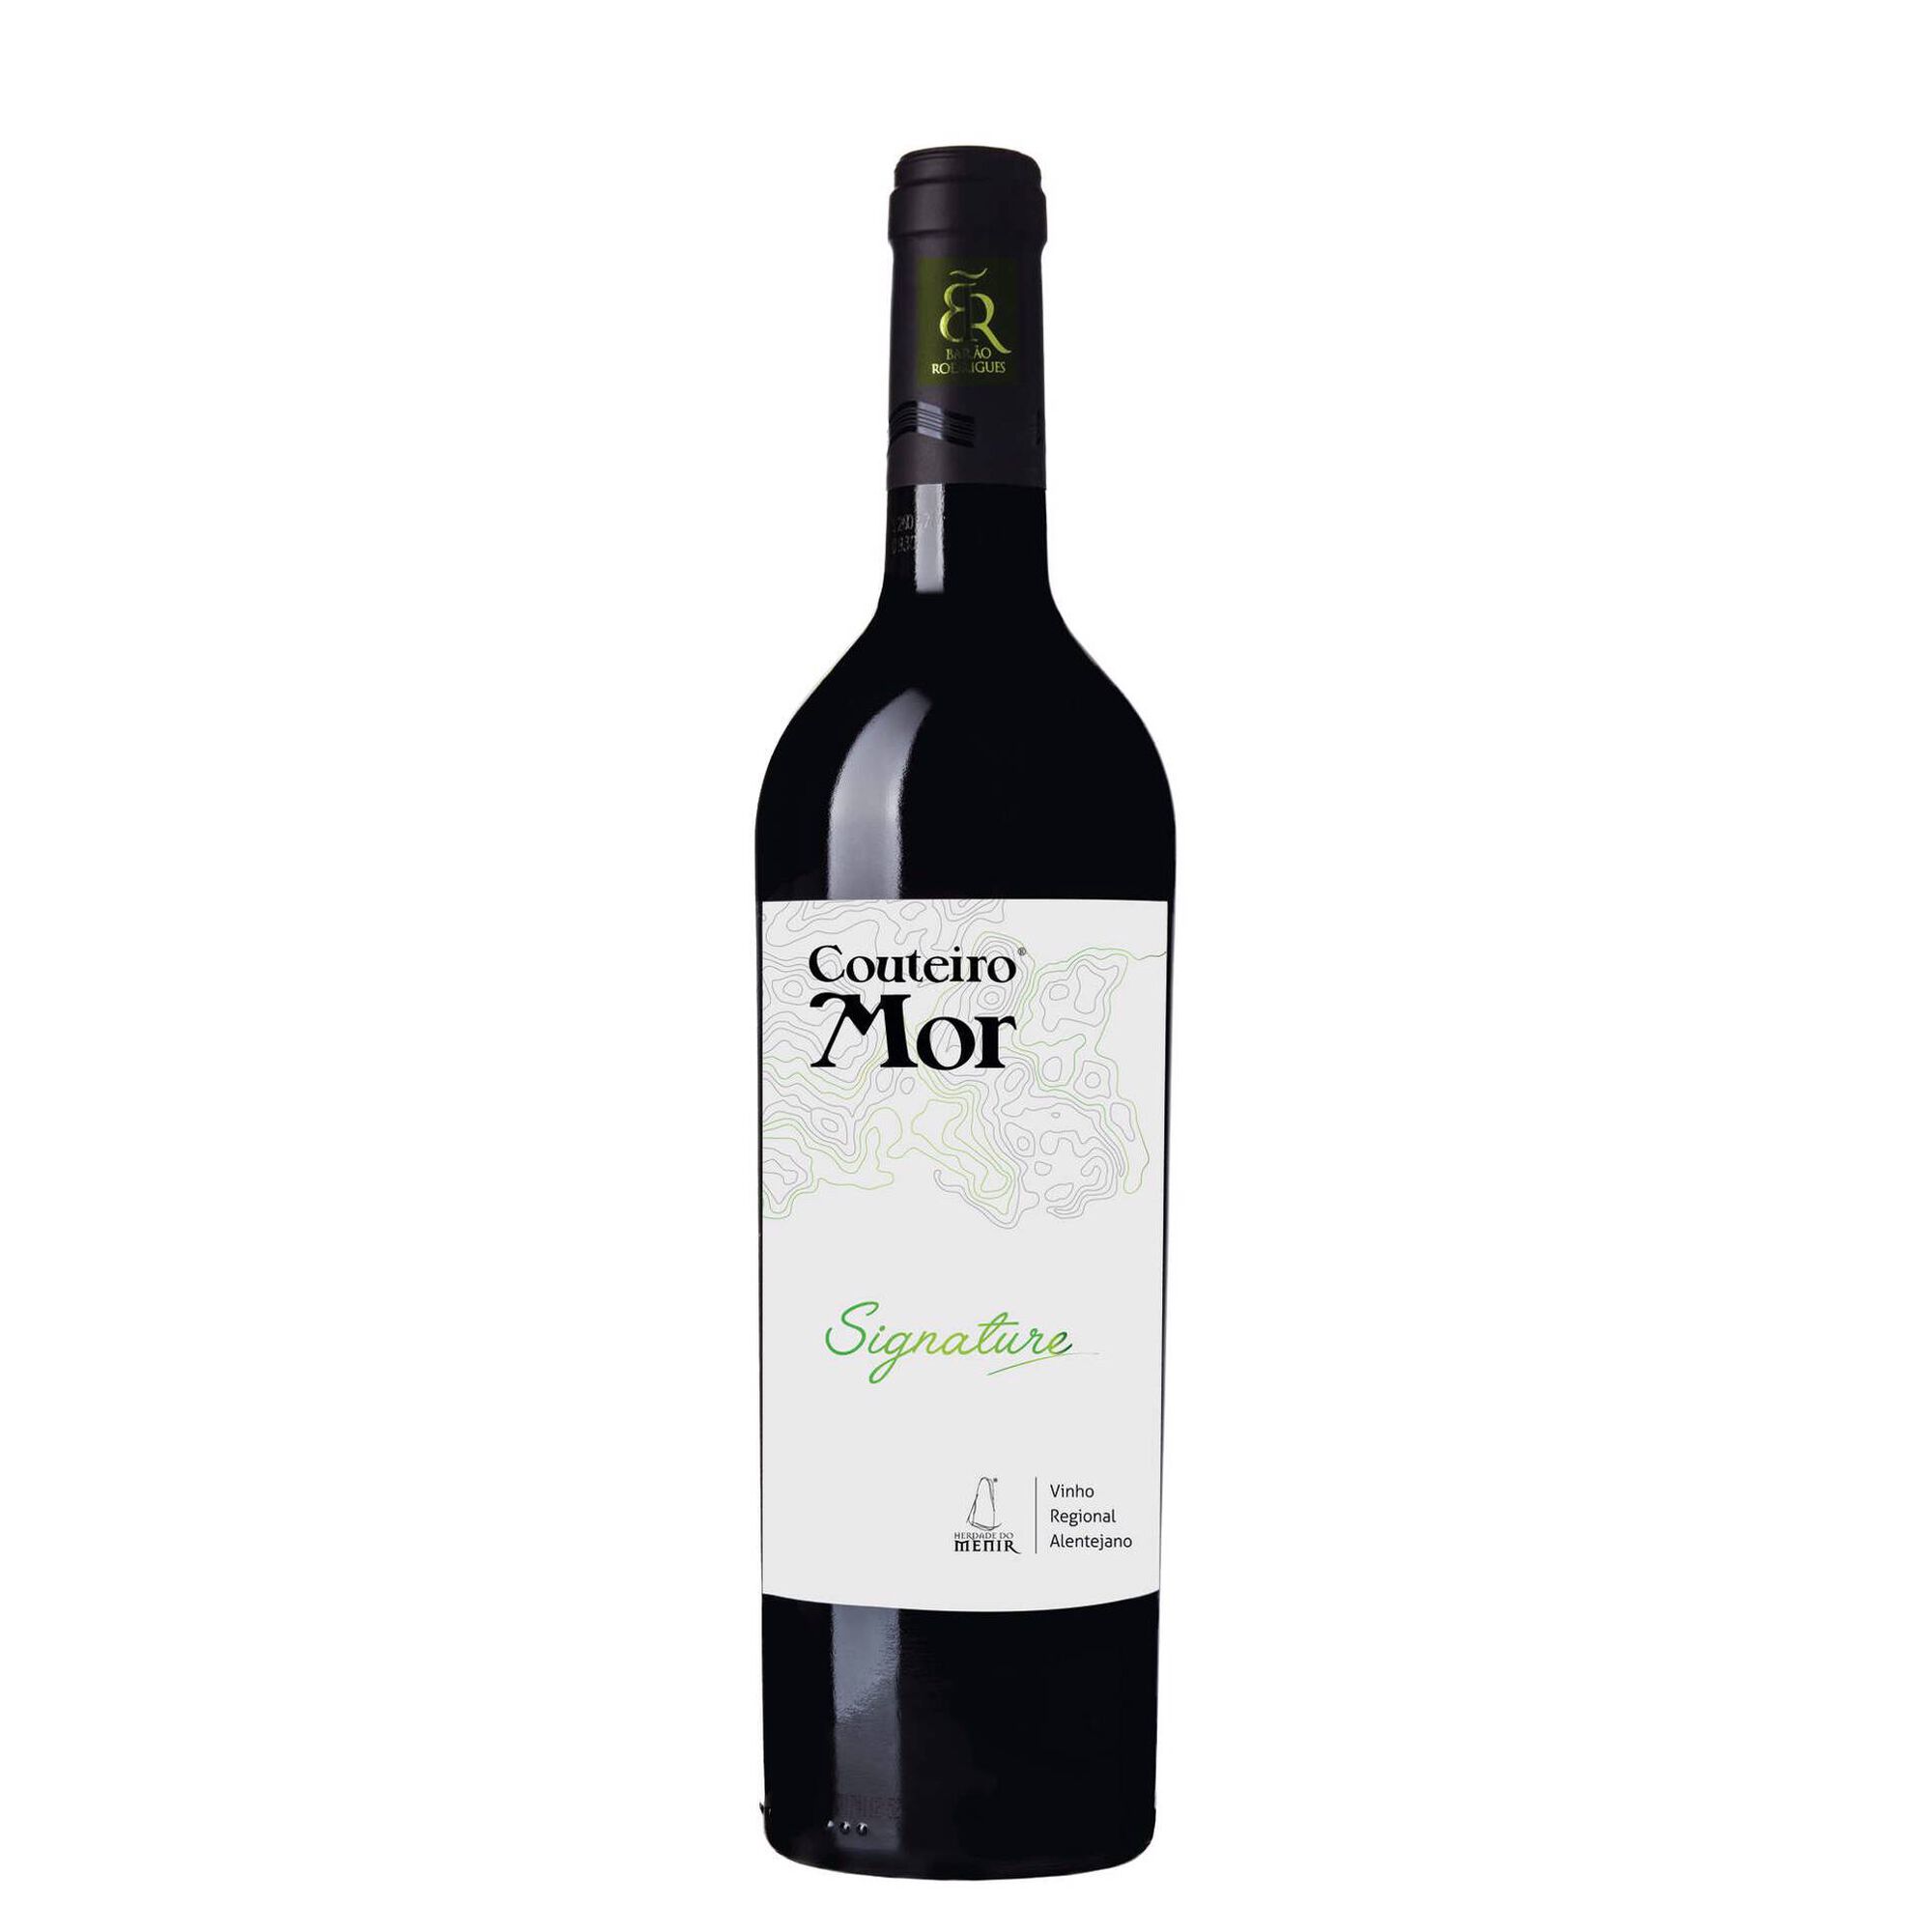 Couteiro-Mor Signature Regional Alentejano Vinho Branco